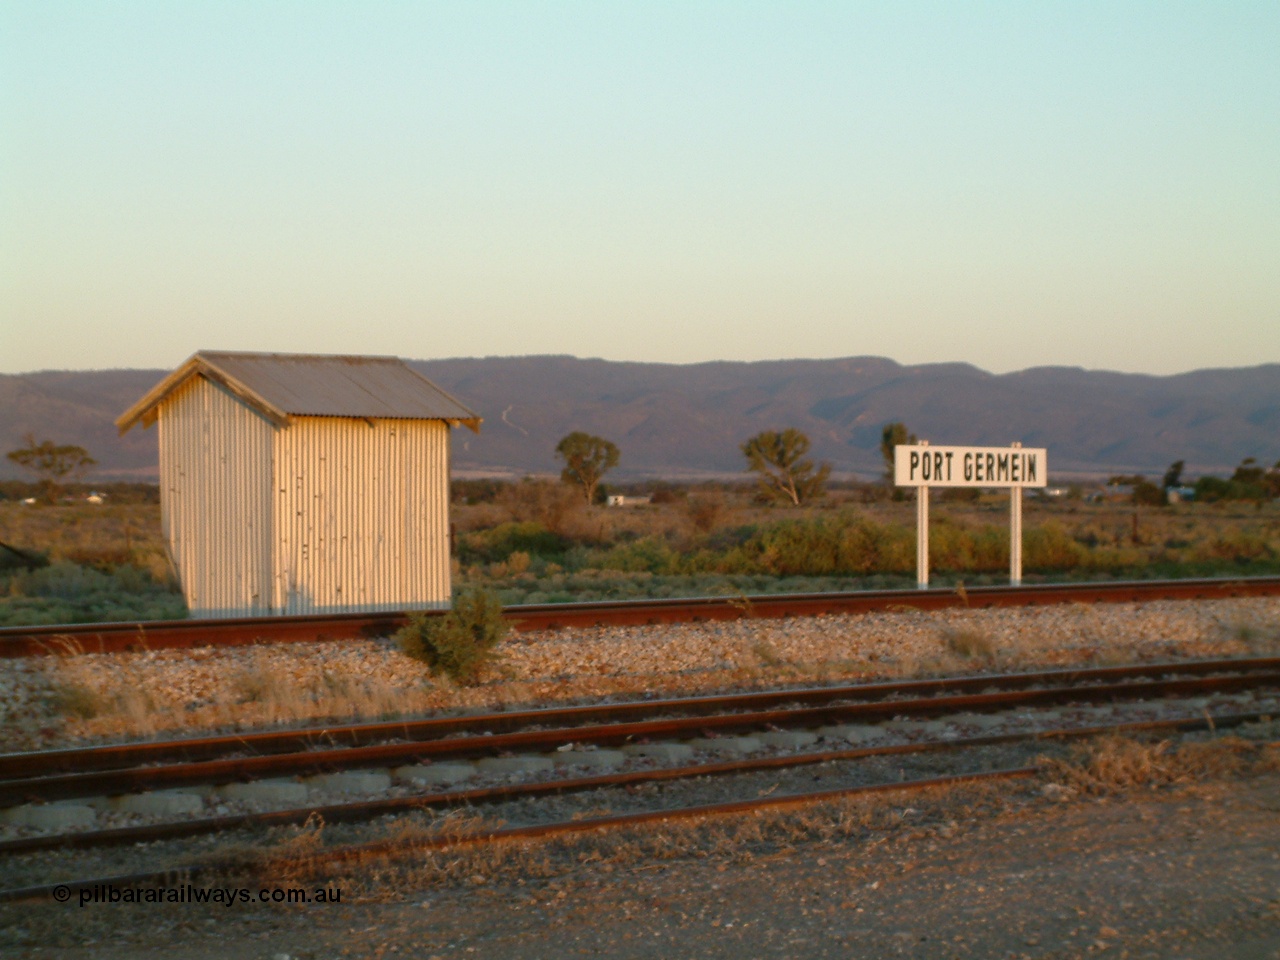 030403 180231
Port Germein, twilight shot of station name board and waiting shelter, Flinders Ranges form the backdrop.
